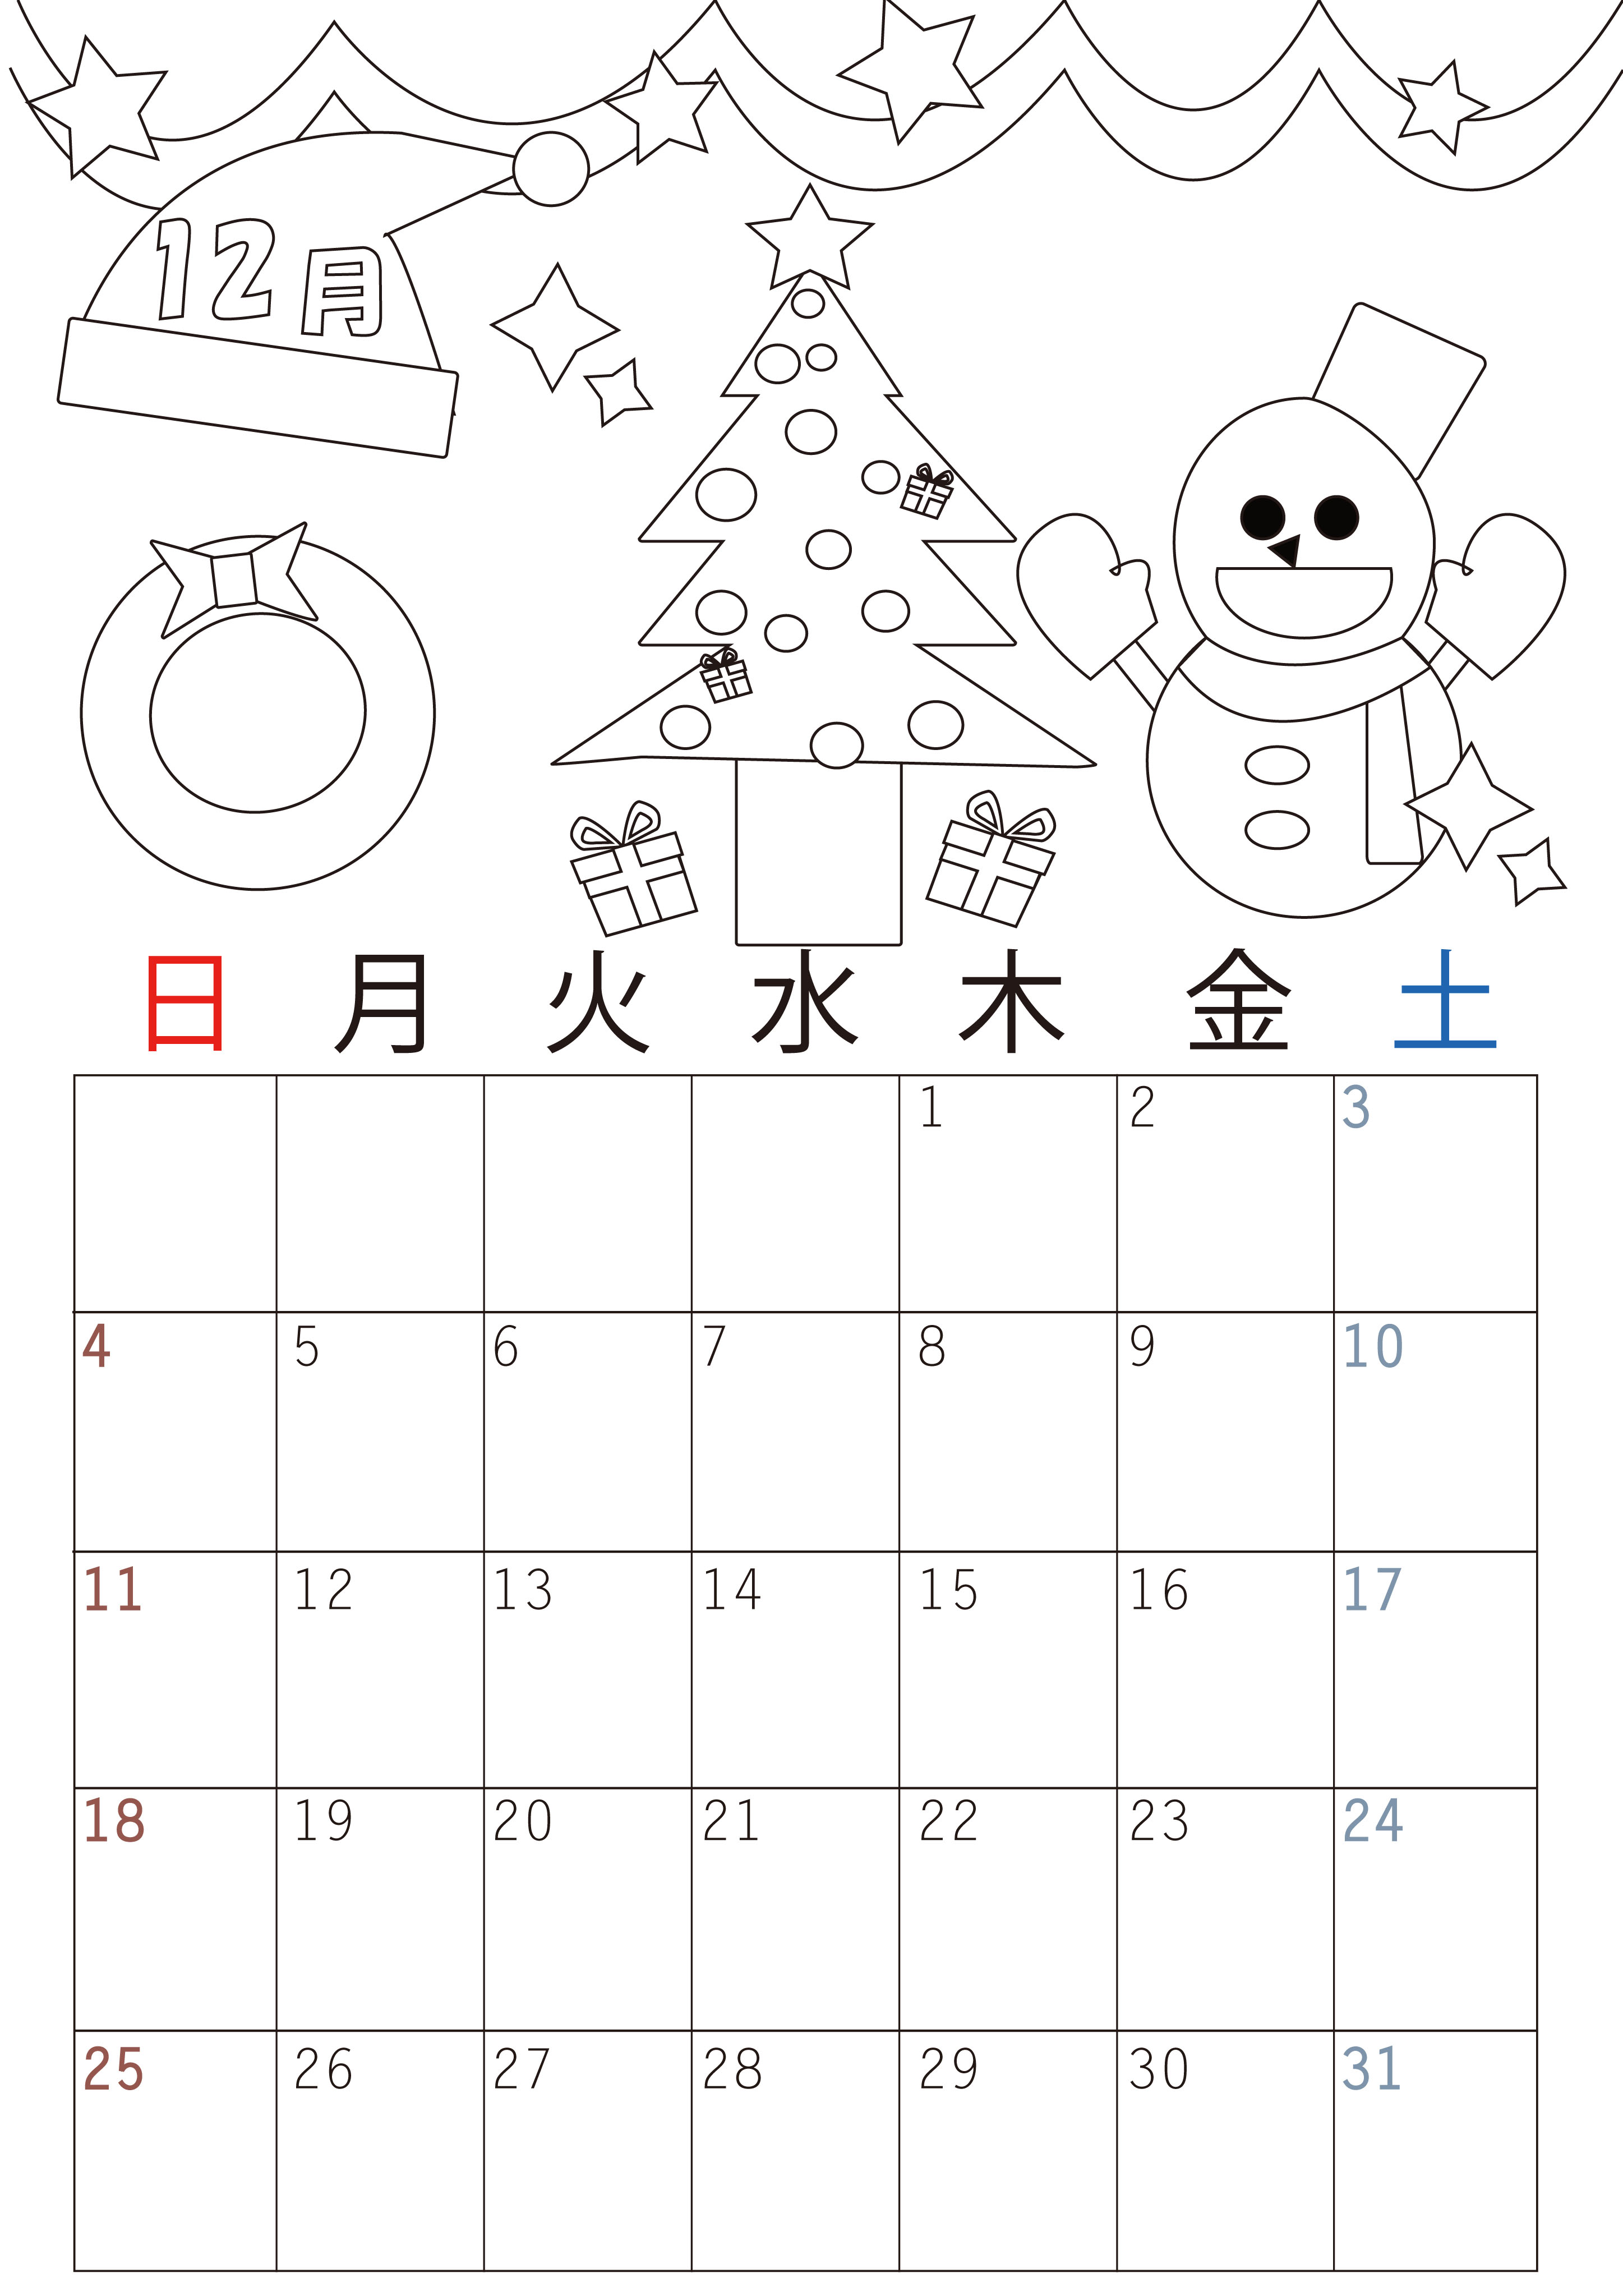 シンプルな22年12月カレンダー 雪だるまの塗り絵を無料でダウンロード 素材デザイン王